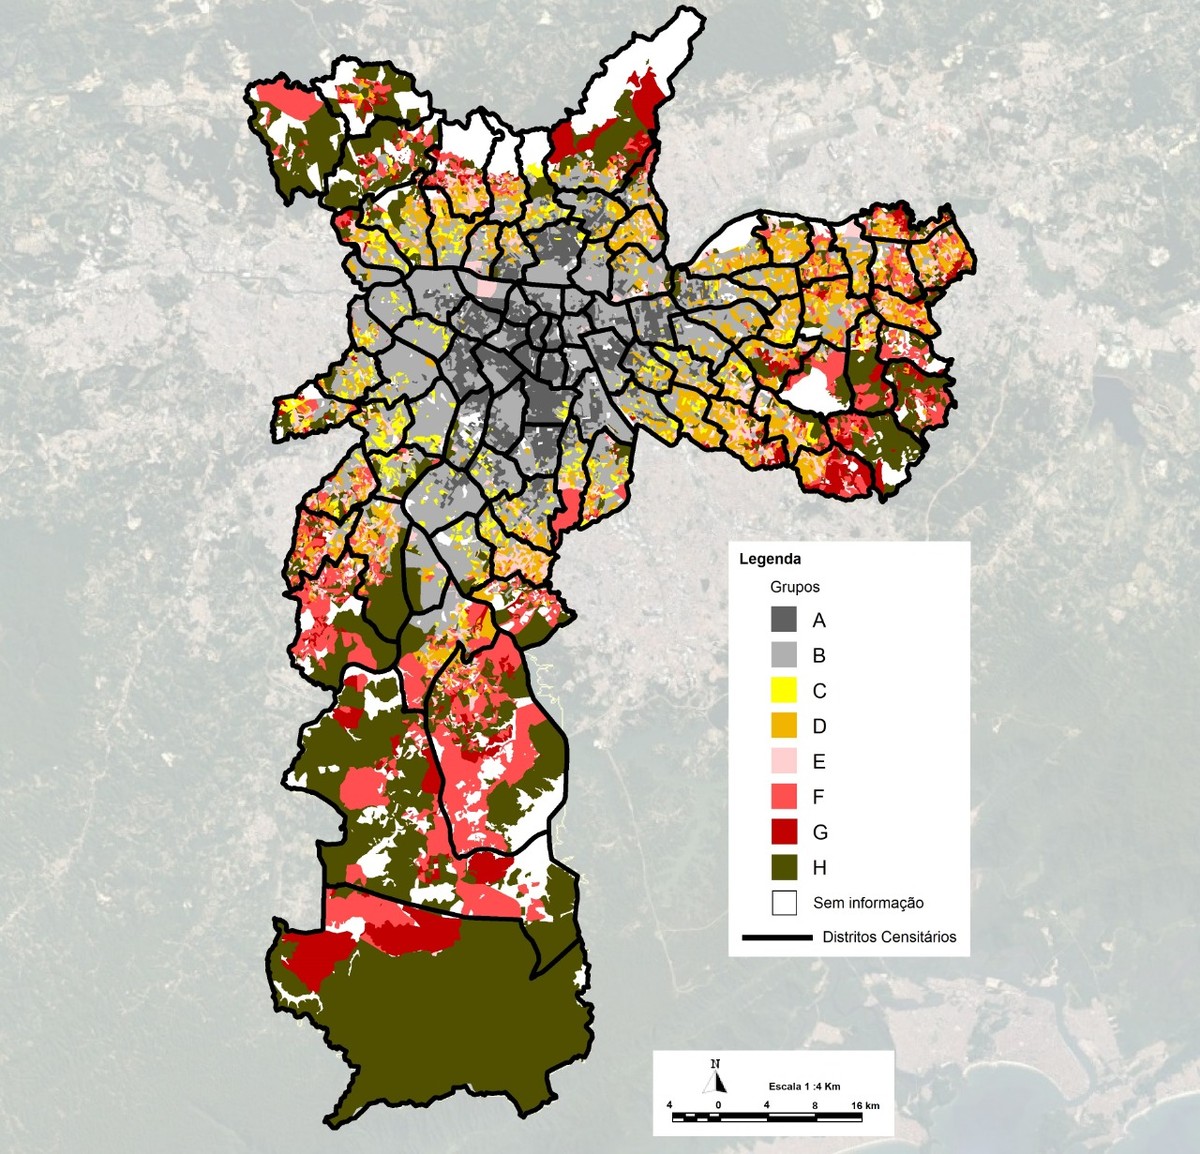 Estudo da USP diz que classificação 'Centro e periferia' é ultrapassada e  identifica 8 novos padrões urbanísticos em SP | São Paulo | G1